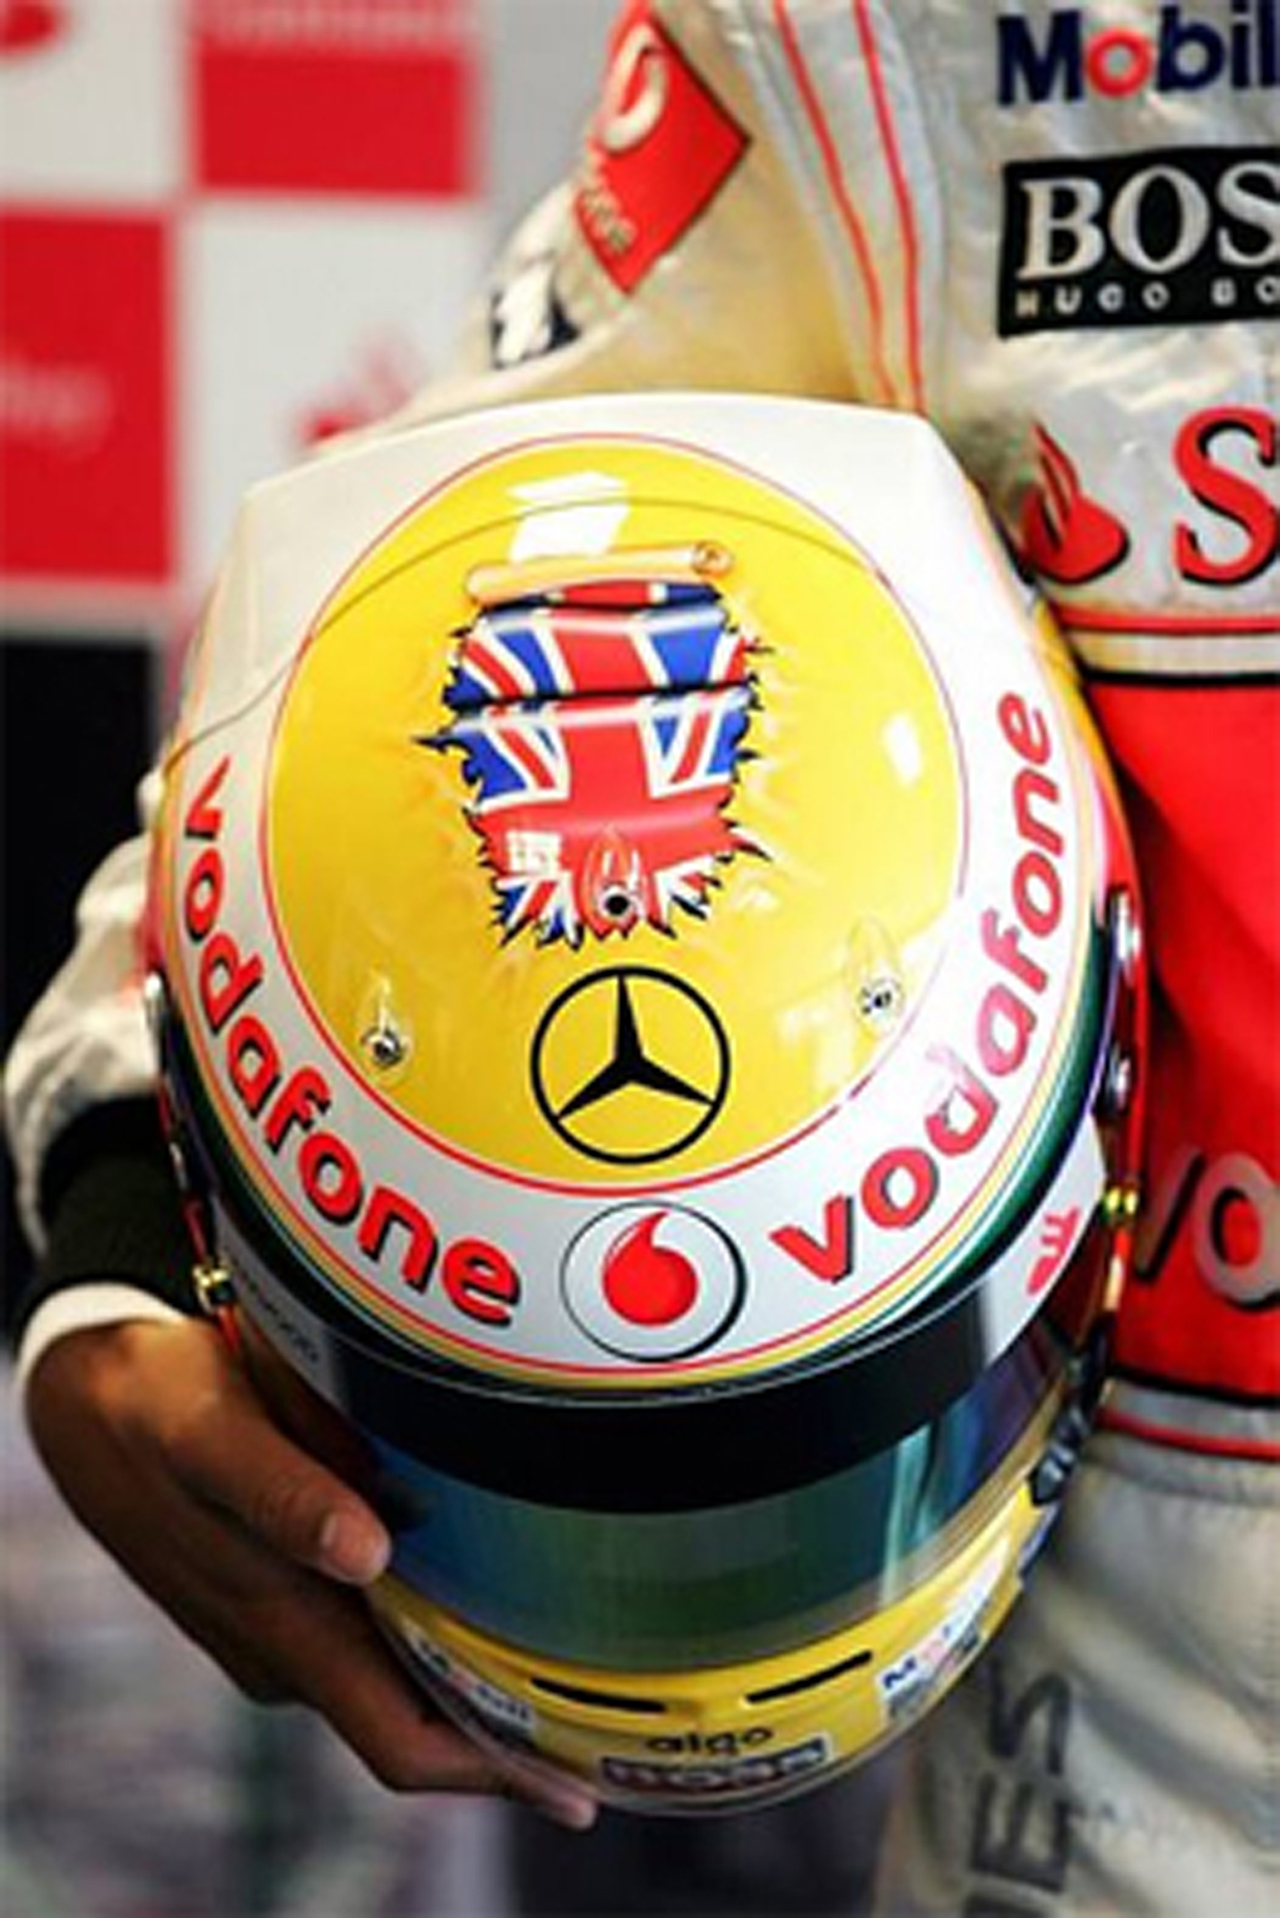 ルイス・ハミルトン イギリスGP 特別ヘルメット 画像